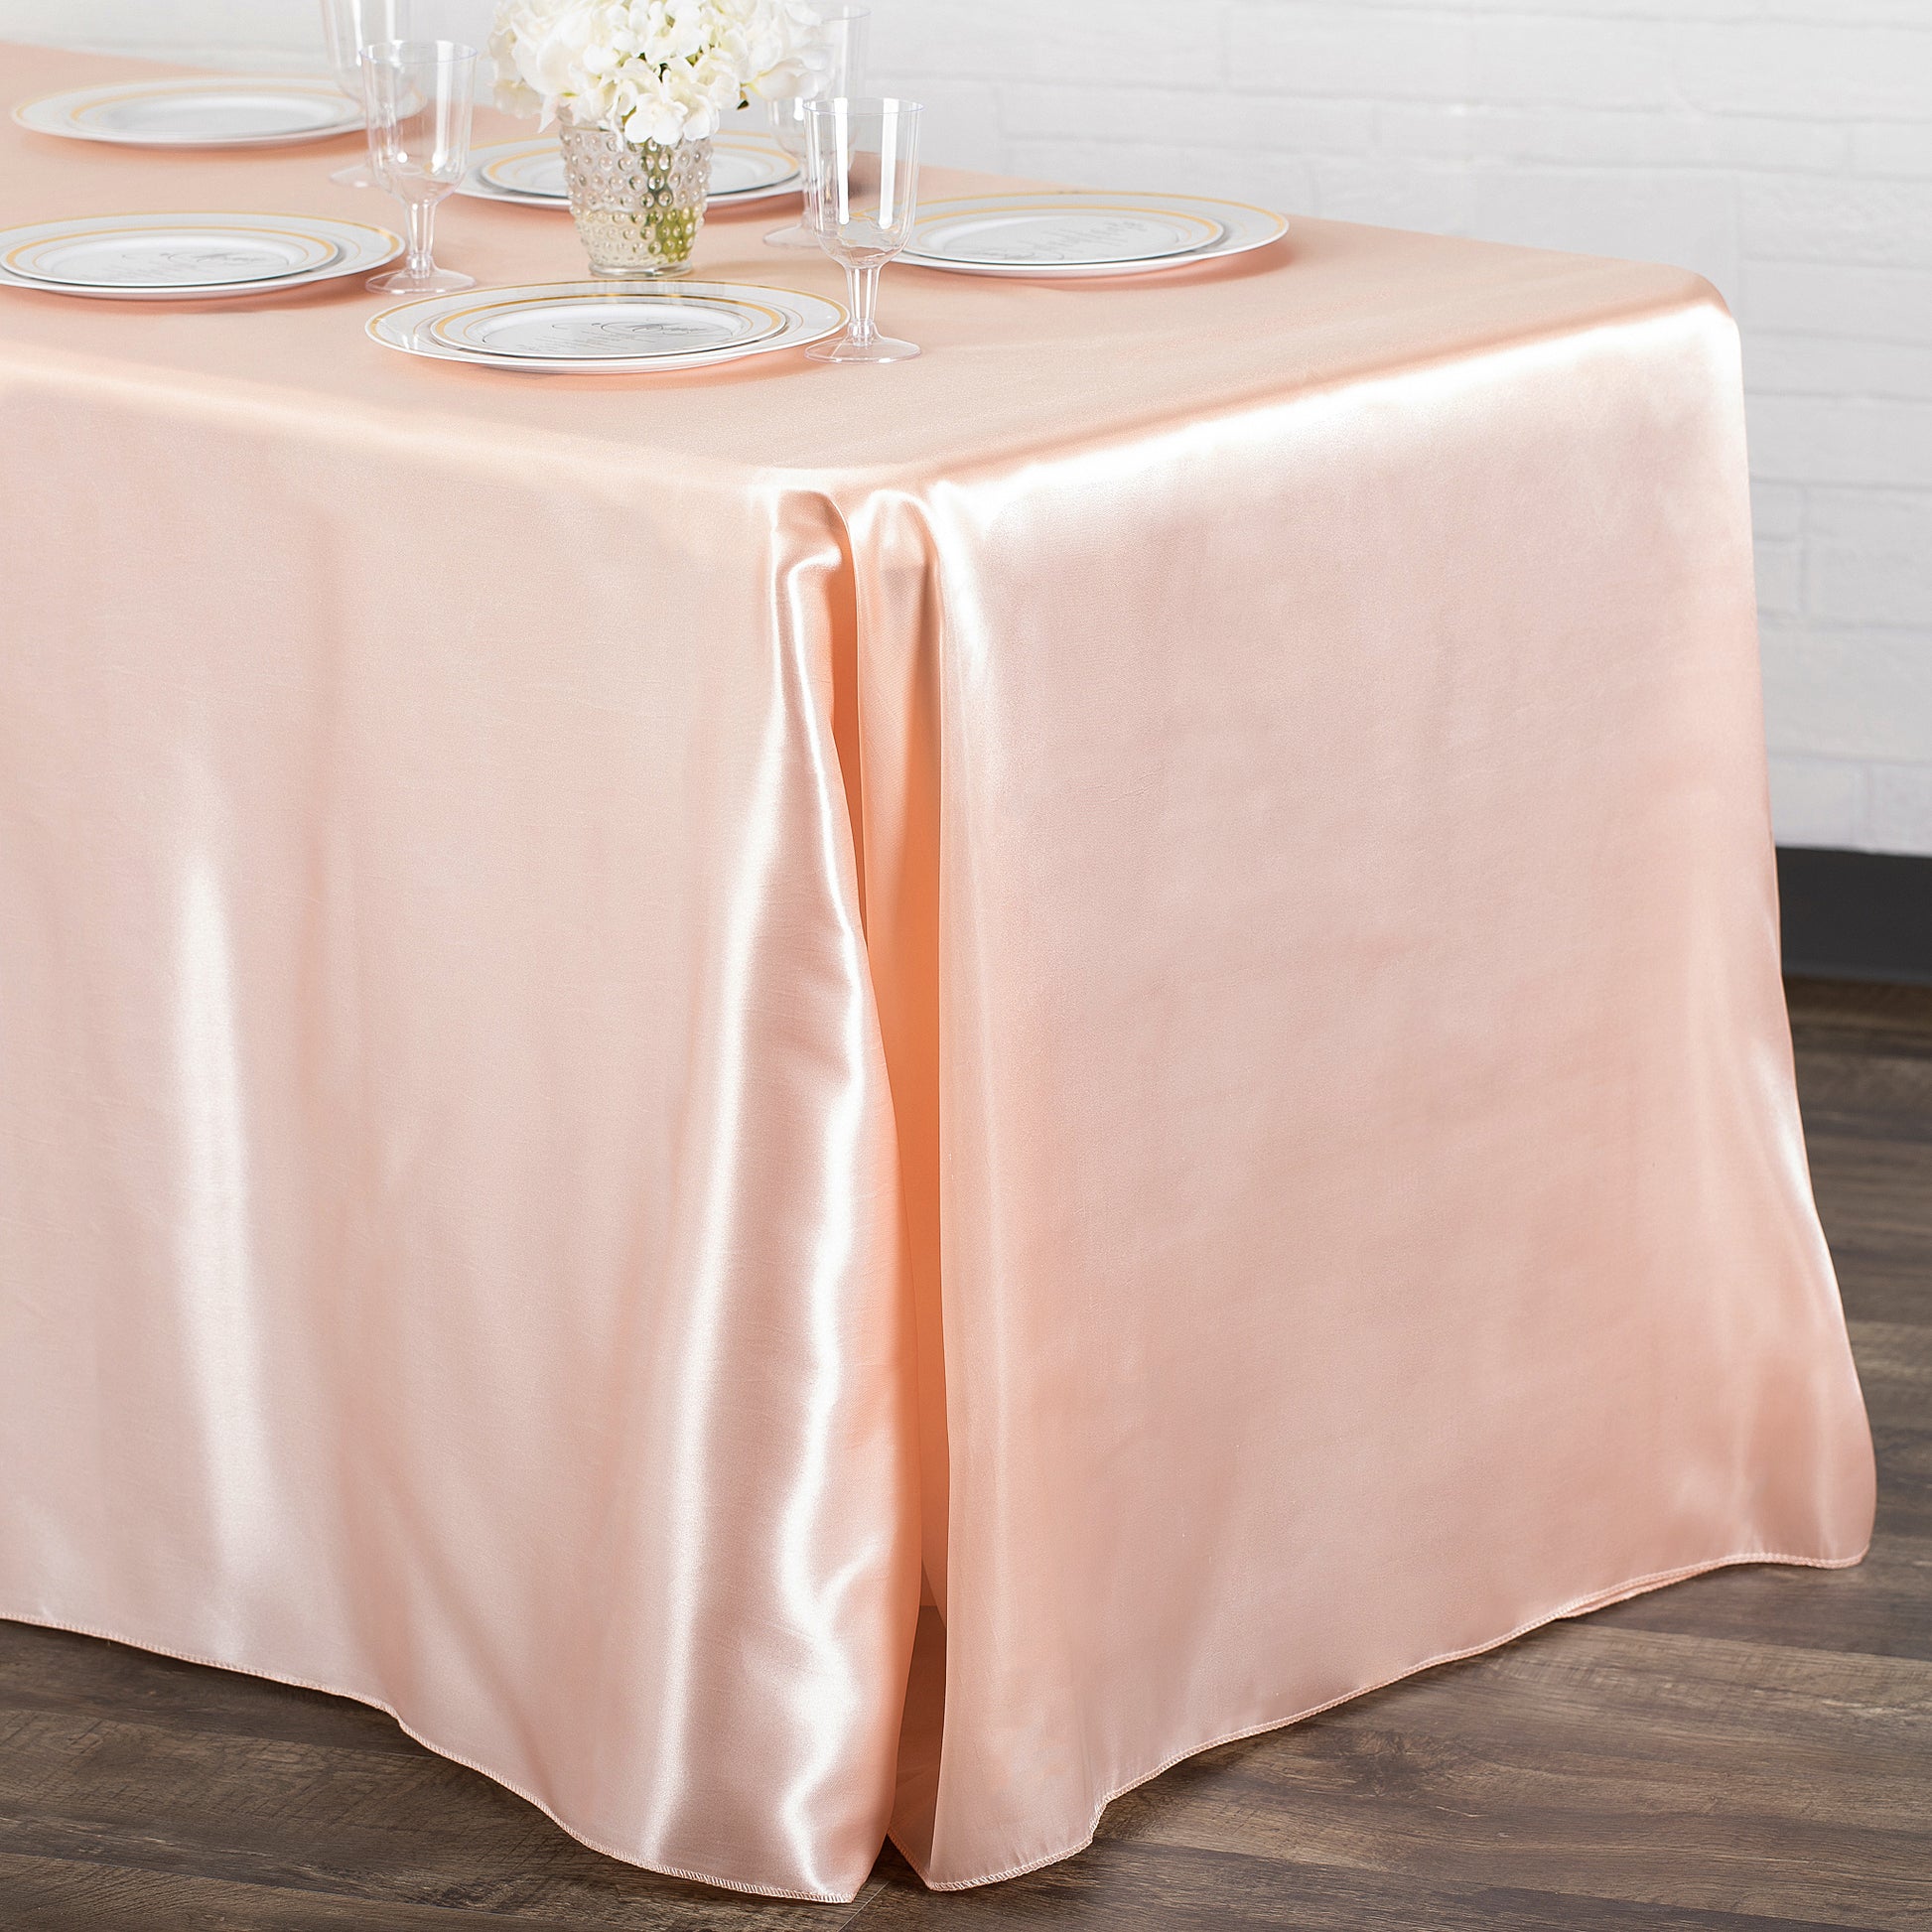 90"x156" Rectangular Satin Tablecloth - Blush/Rose Gold